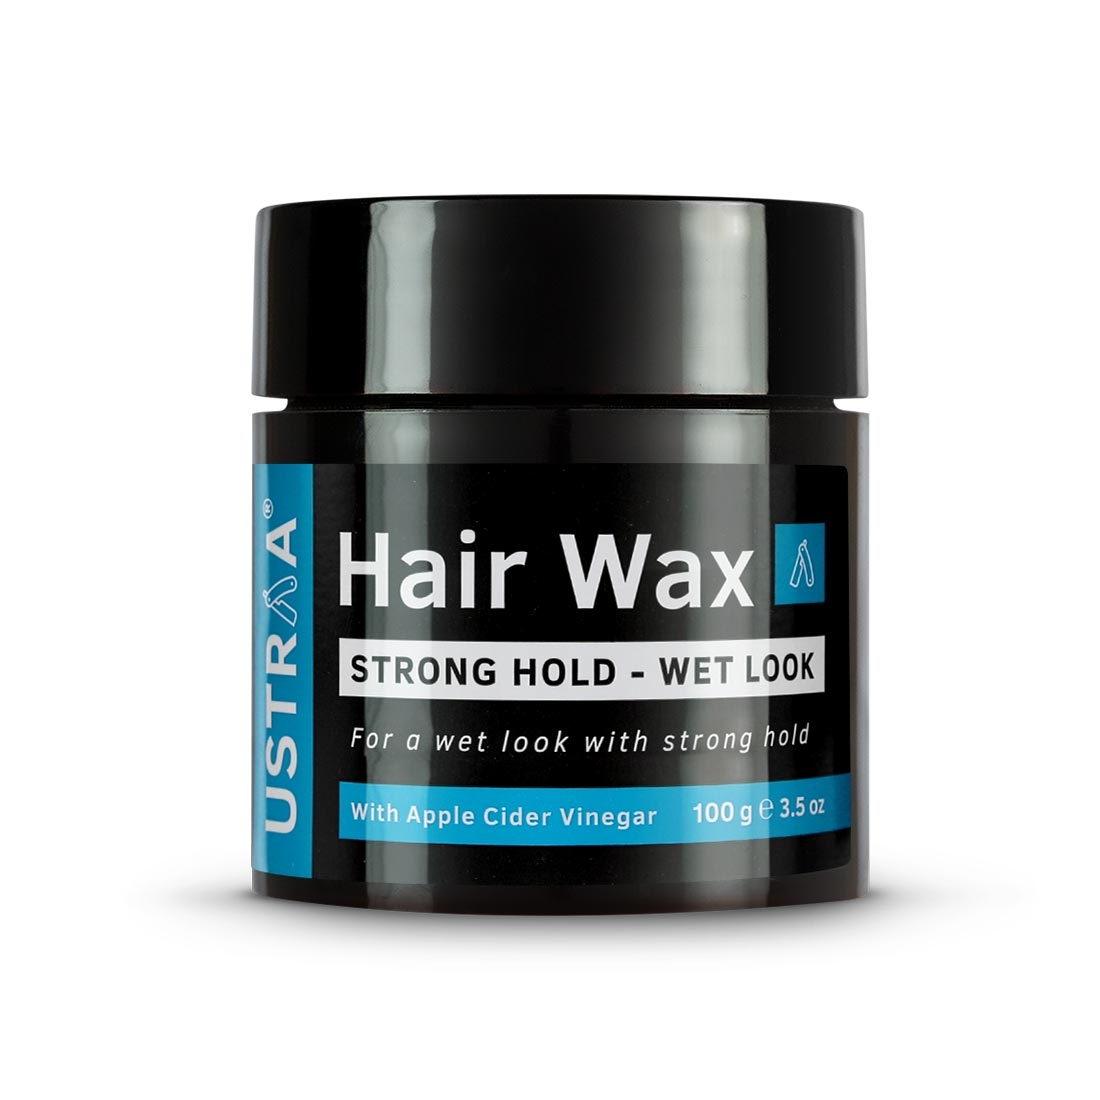 Ustraa | Ustraaa Red Deodorant 150ml & Hair Wax Wet Look 100g 5